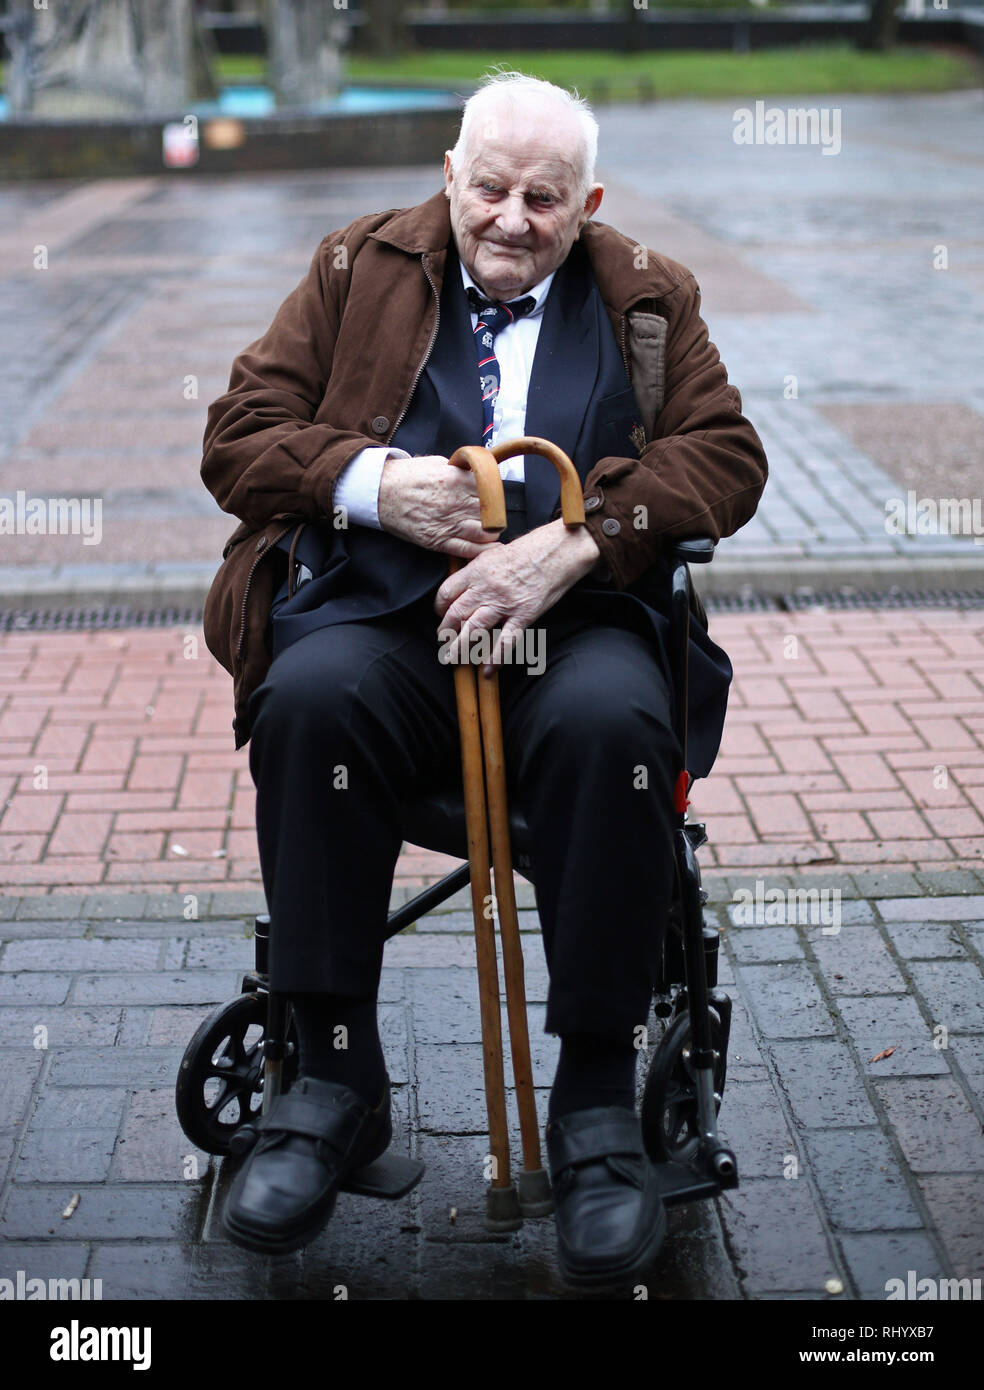 Douglas Meyers, un cieco 97-anno-vecchio Seconda Guerra Mondiale veterano chi sta combattendo per convincere un alto magistrato per fargli abbandonare una struttura di cura e di porre fine alla sua vita a casa, lascia la casa corte di Southend dopo un'audizione. Foto Stock